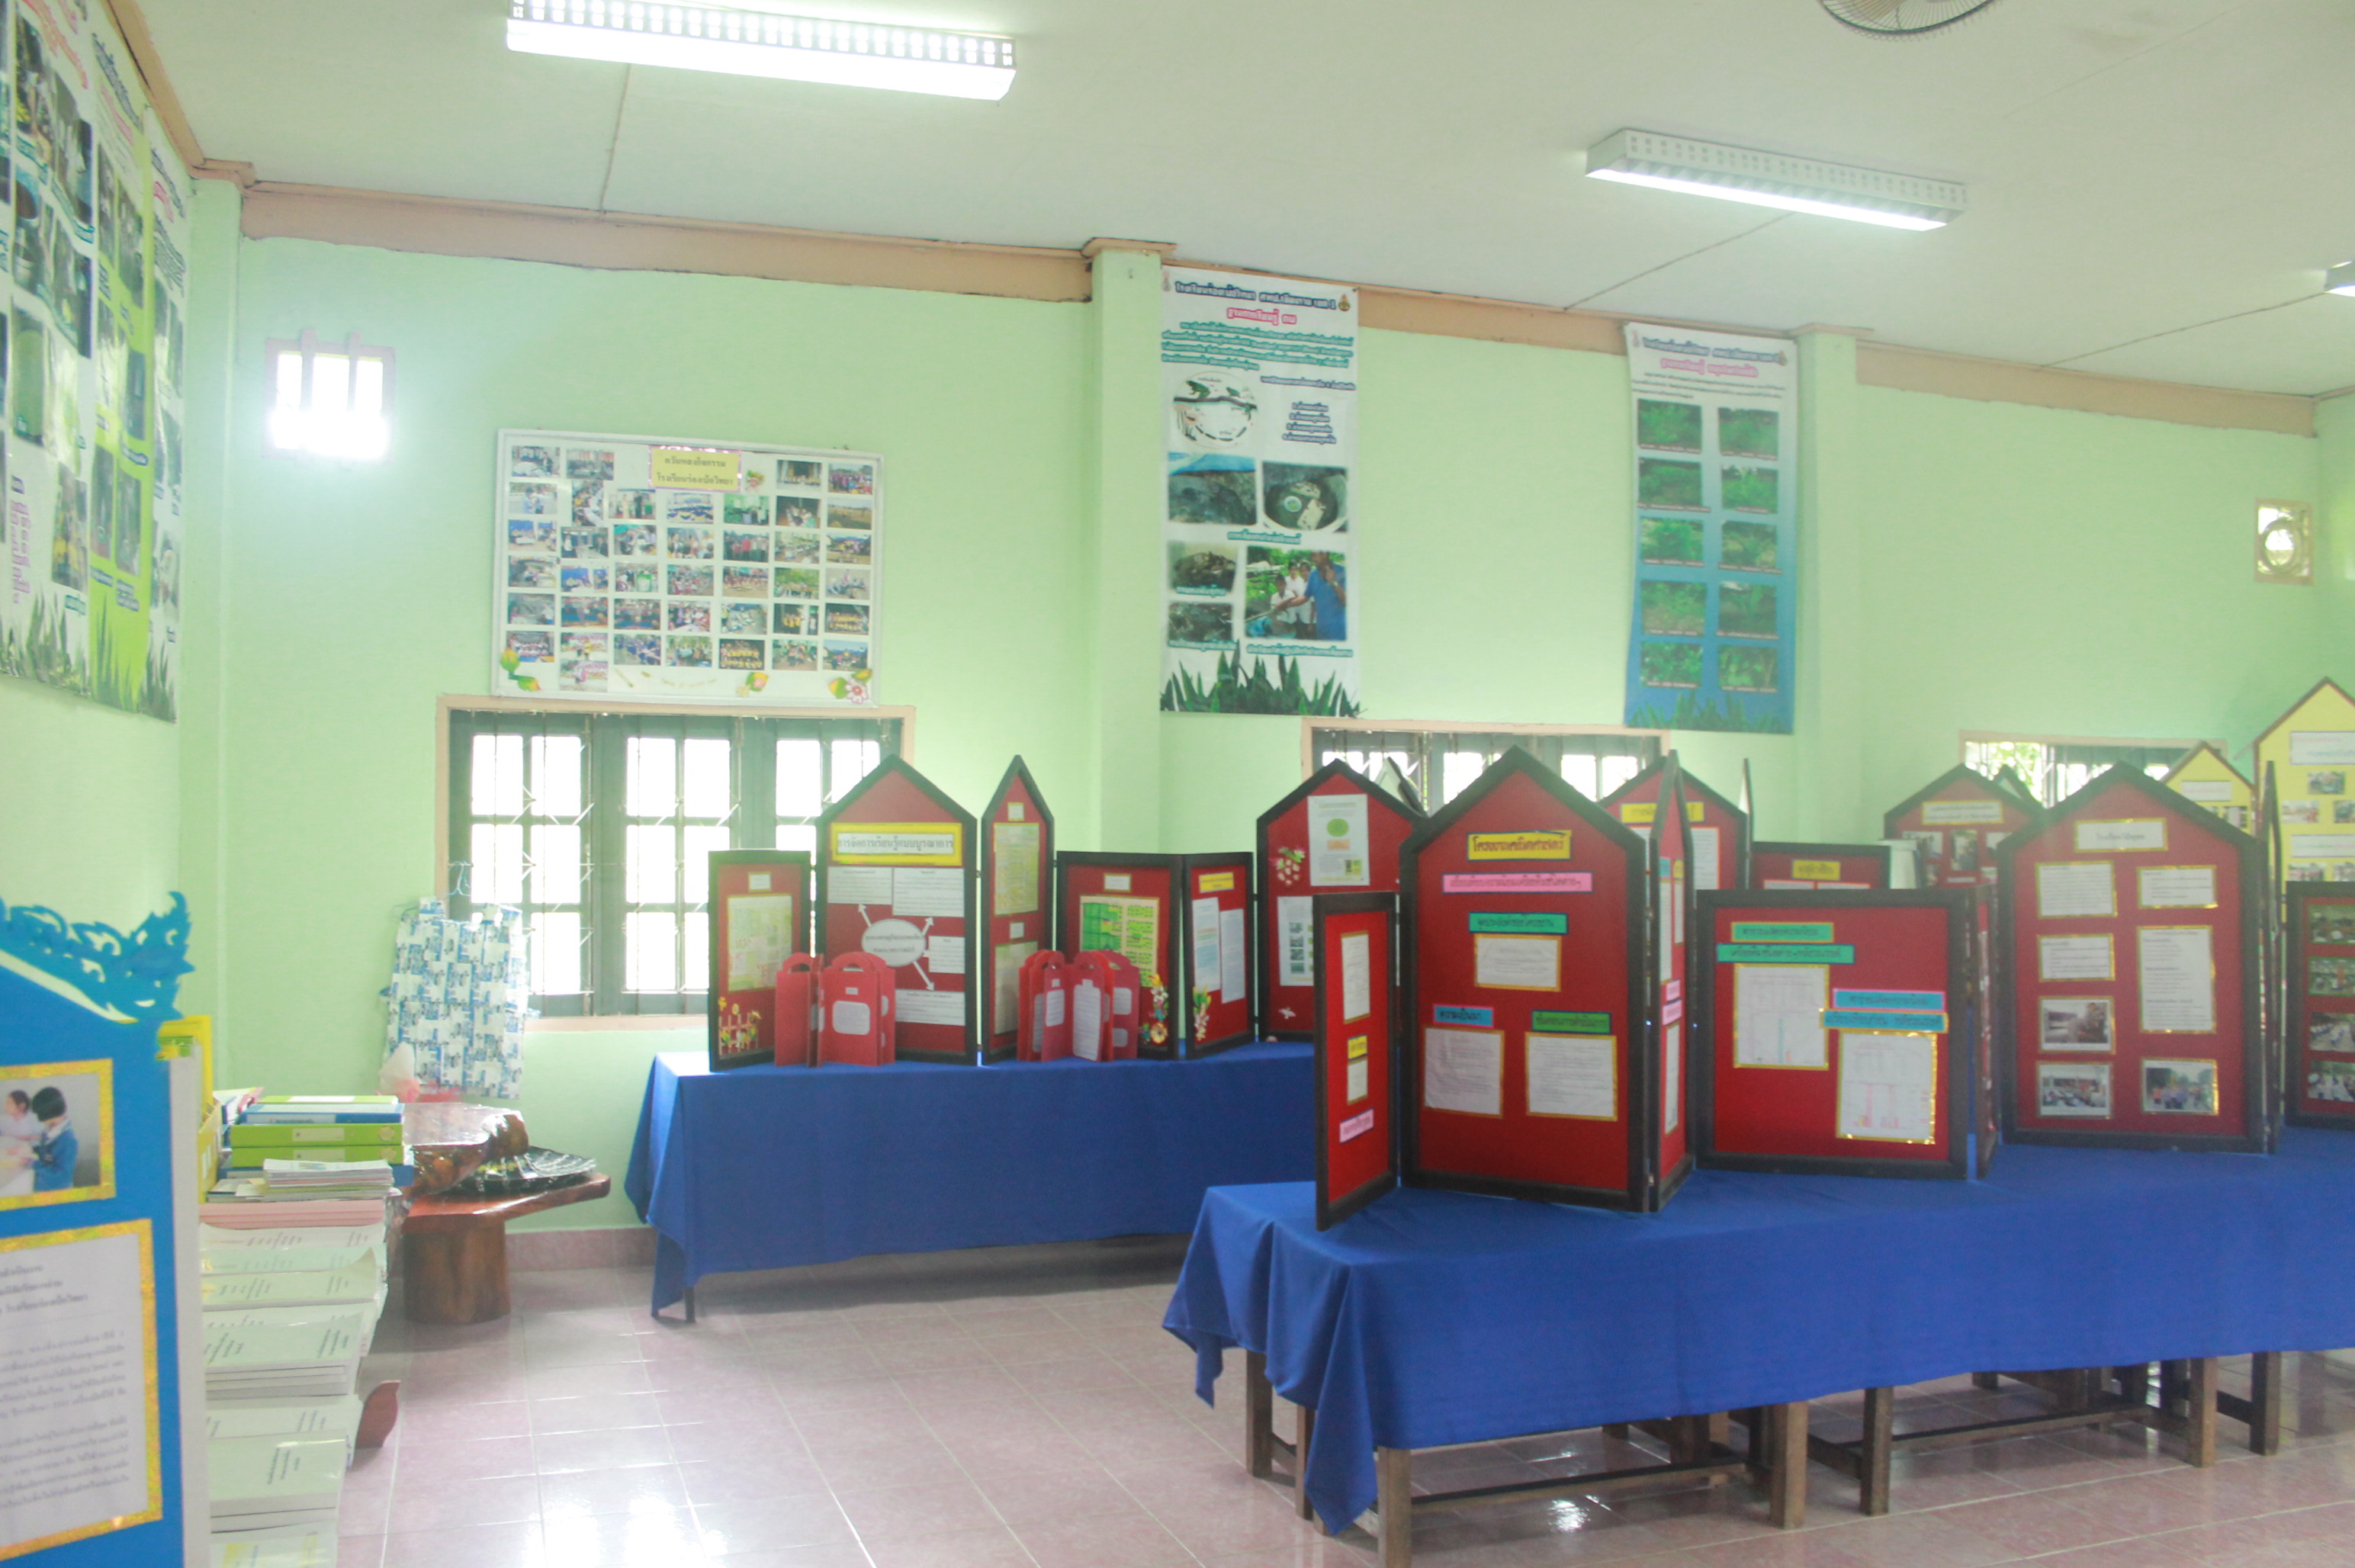 มอบห้องสมุดกรีนวิงให้โรงเรียนร่องเบ้อวิทยา อ.เมือง จ.เชียงราย วันที่ 25 ก.ค. 2556